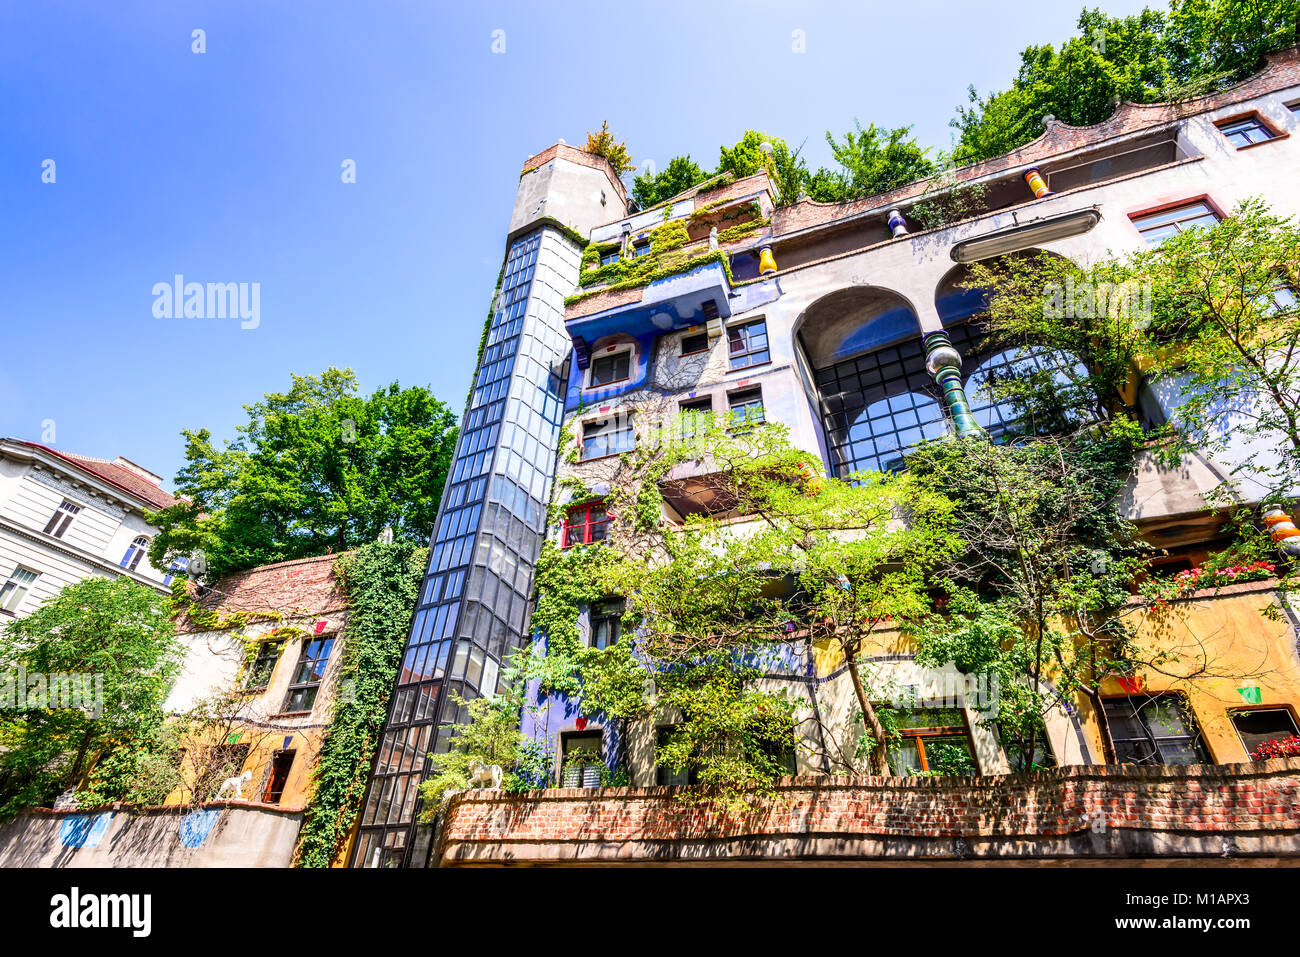 Vienne, AUTRICHE - 2e août 2015 : une vue de l'extérieur des bâtiments de Hundertwasserhaus, monument expressionniste à Vienne pendant la journée. Banque D'Images